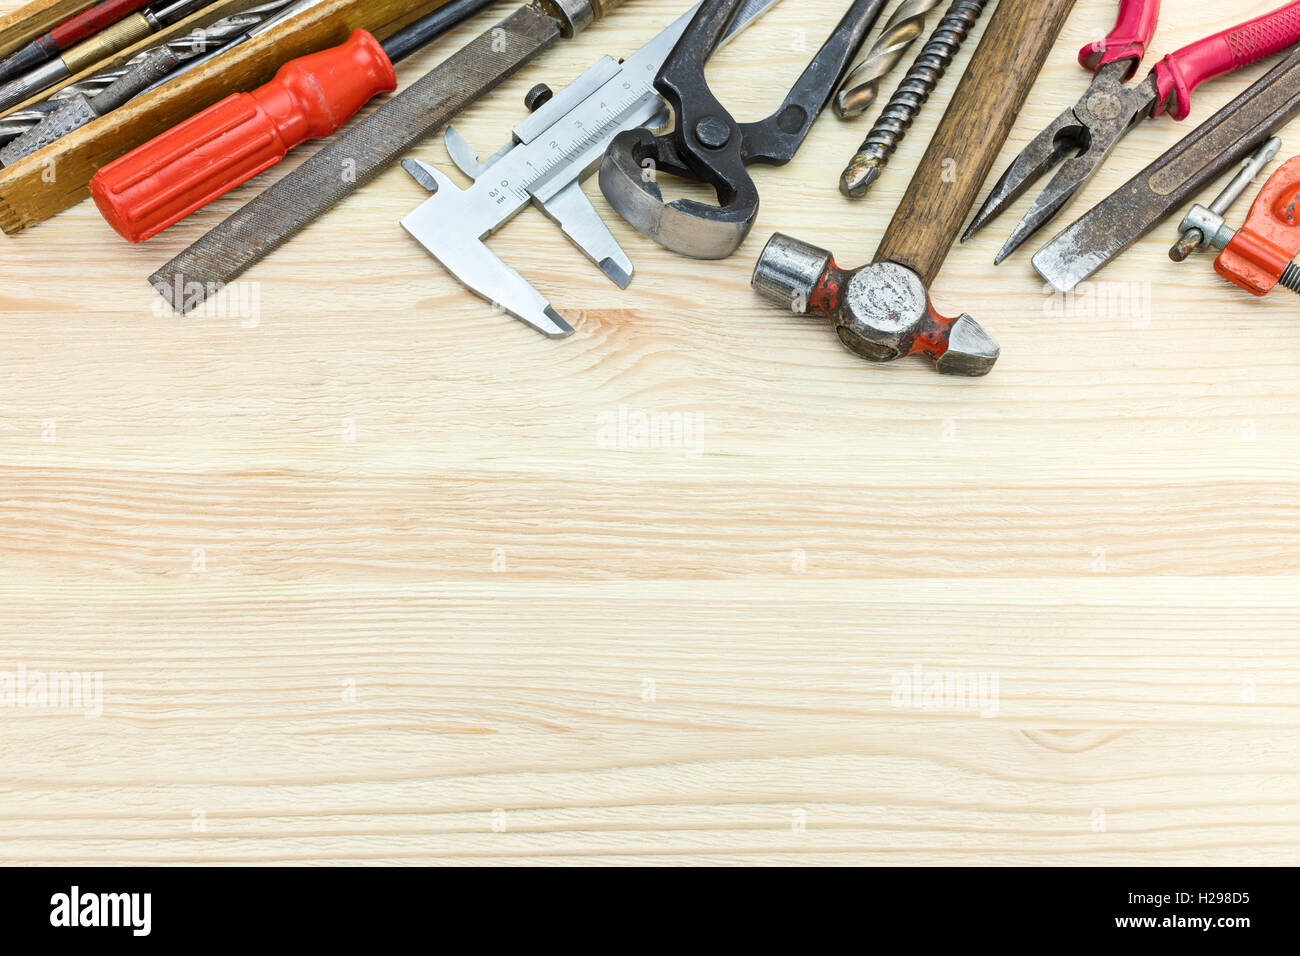 Vari vecchi utensili a mano comprendente un martello, pinze, cacciaviti e altri sul tavolo di legno sfondo Foto Stock